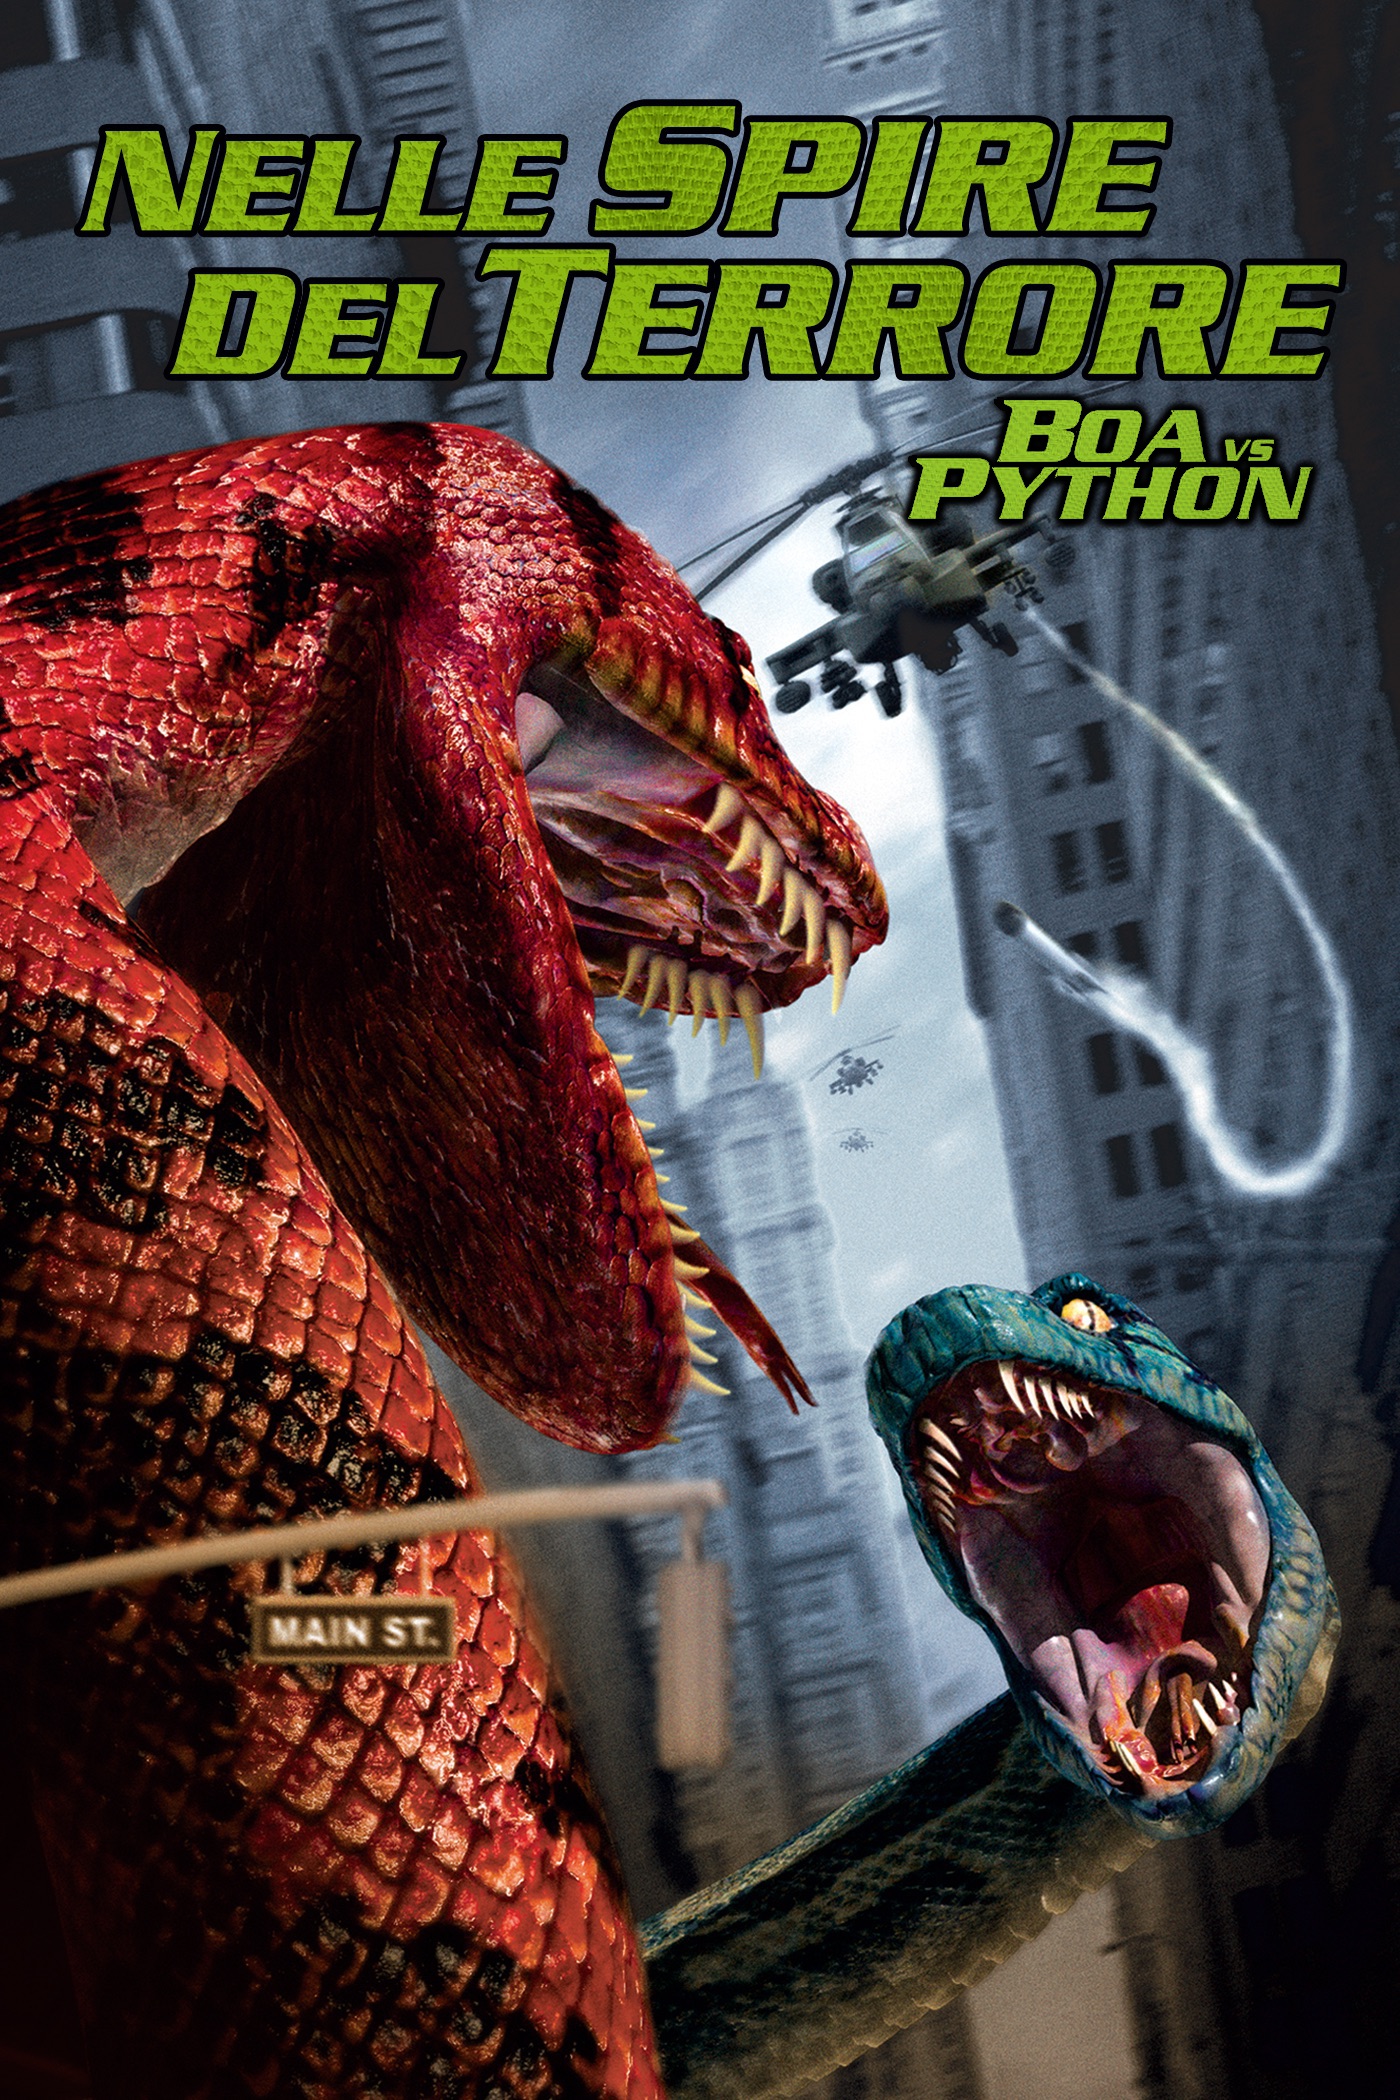 Boa vs Python – Nelle spire del terrore (2004)